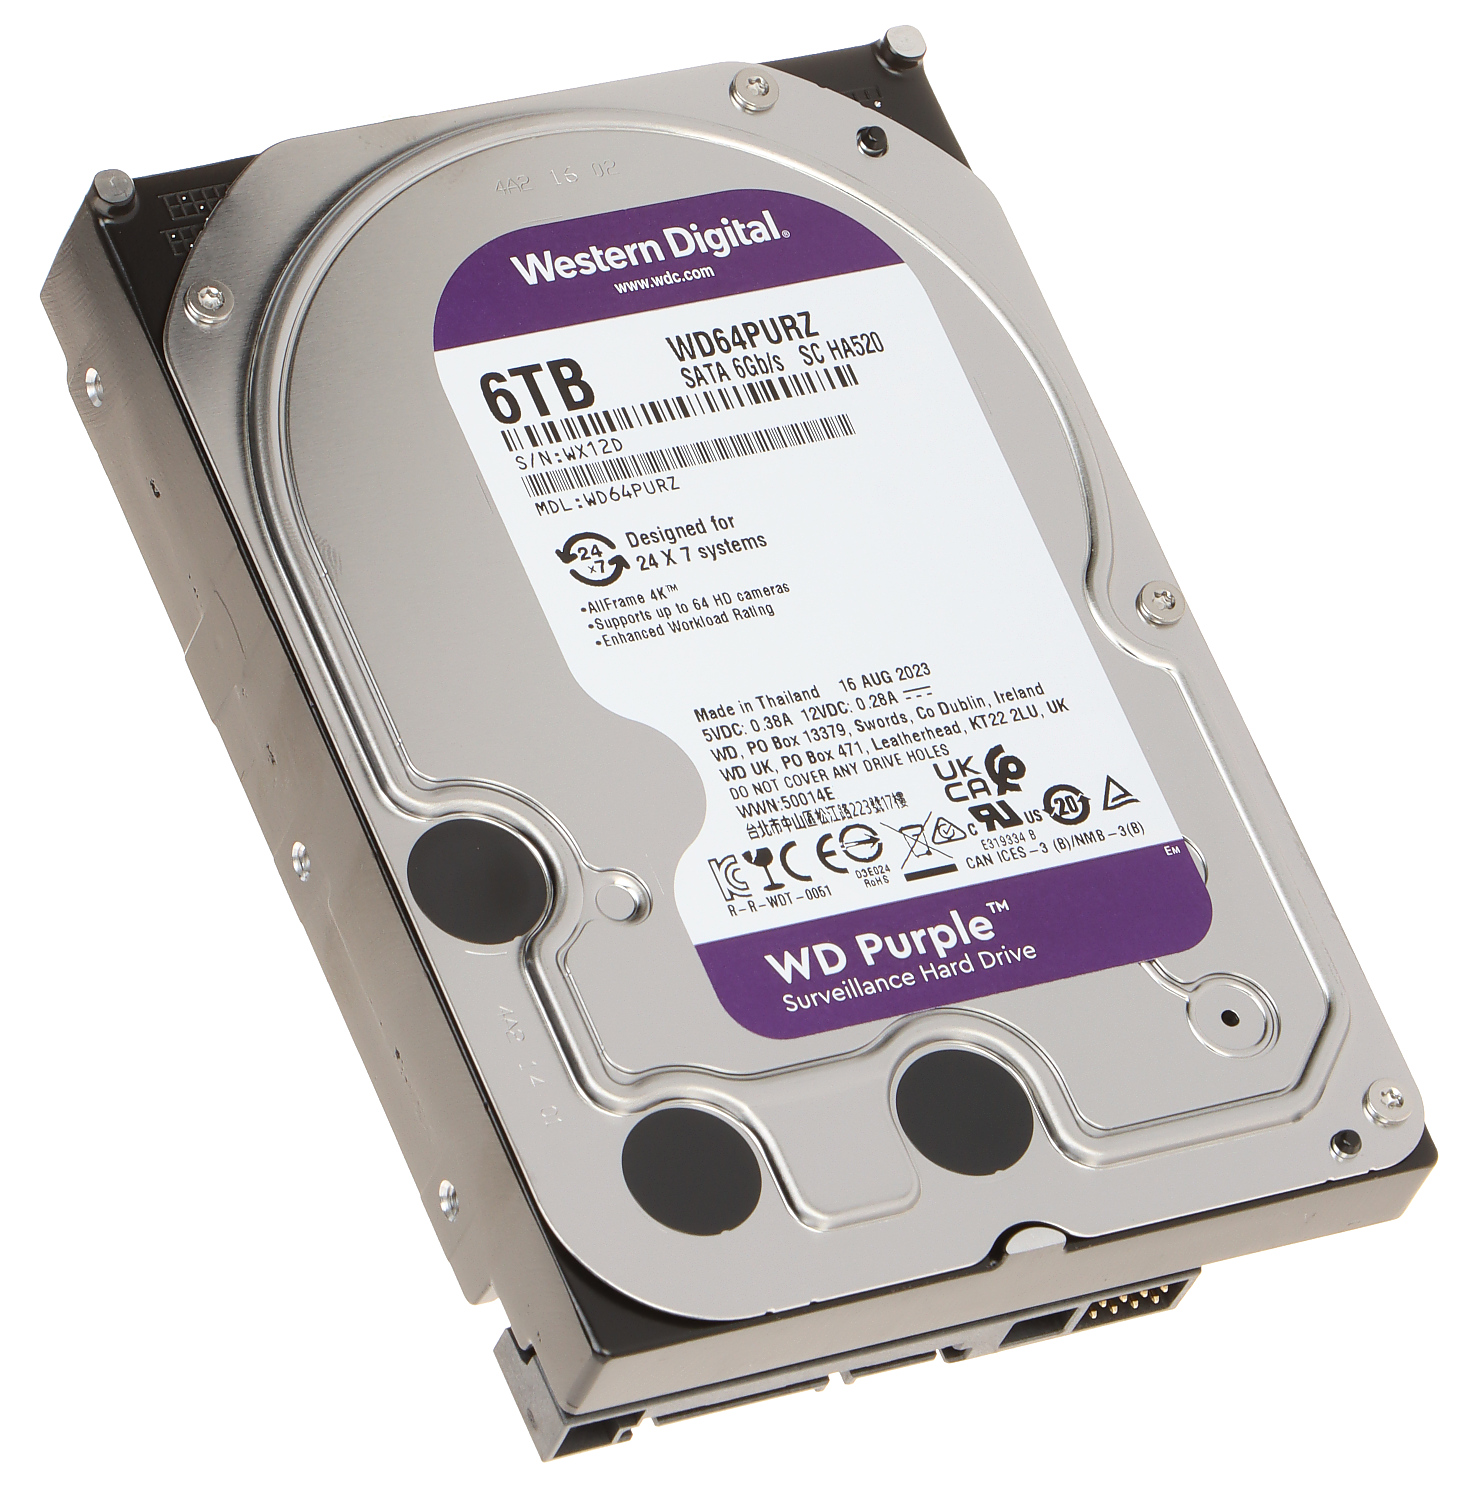 Western Digital 6TB WD Purple Surveillance Internal Hard Drive HDD - SATA 6 Gb/s, 256 MB Cache, 3.5" - WD64PURZ